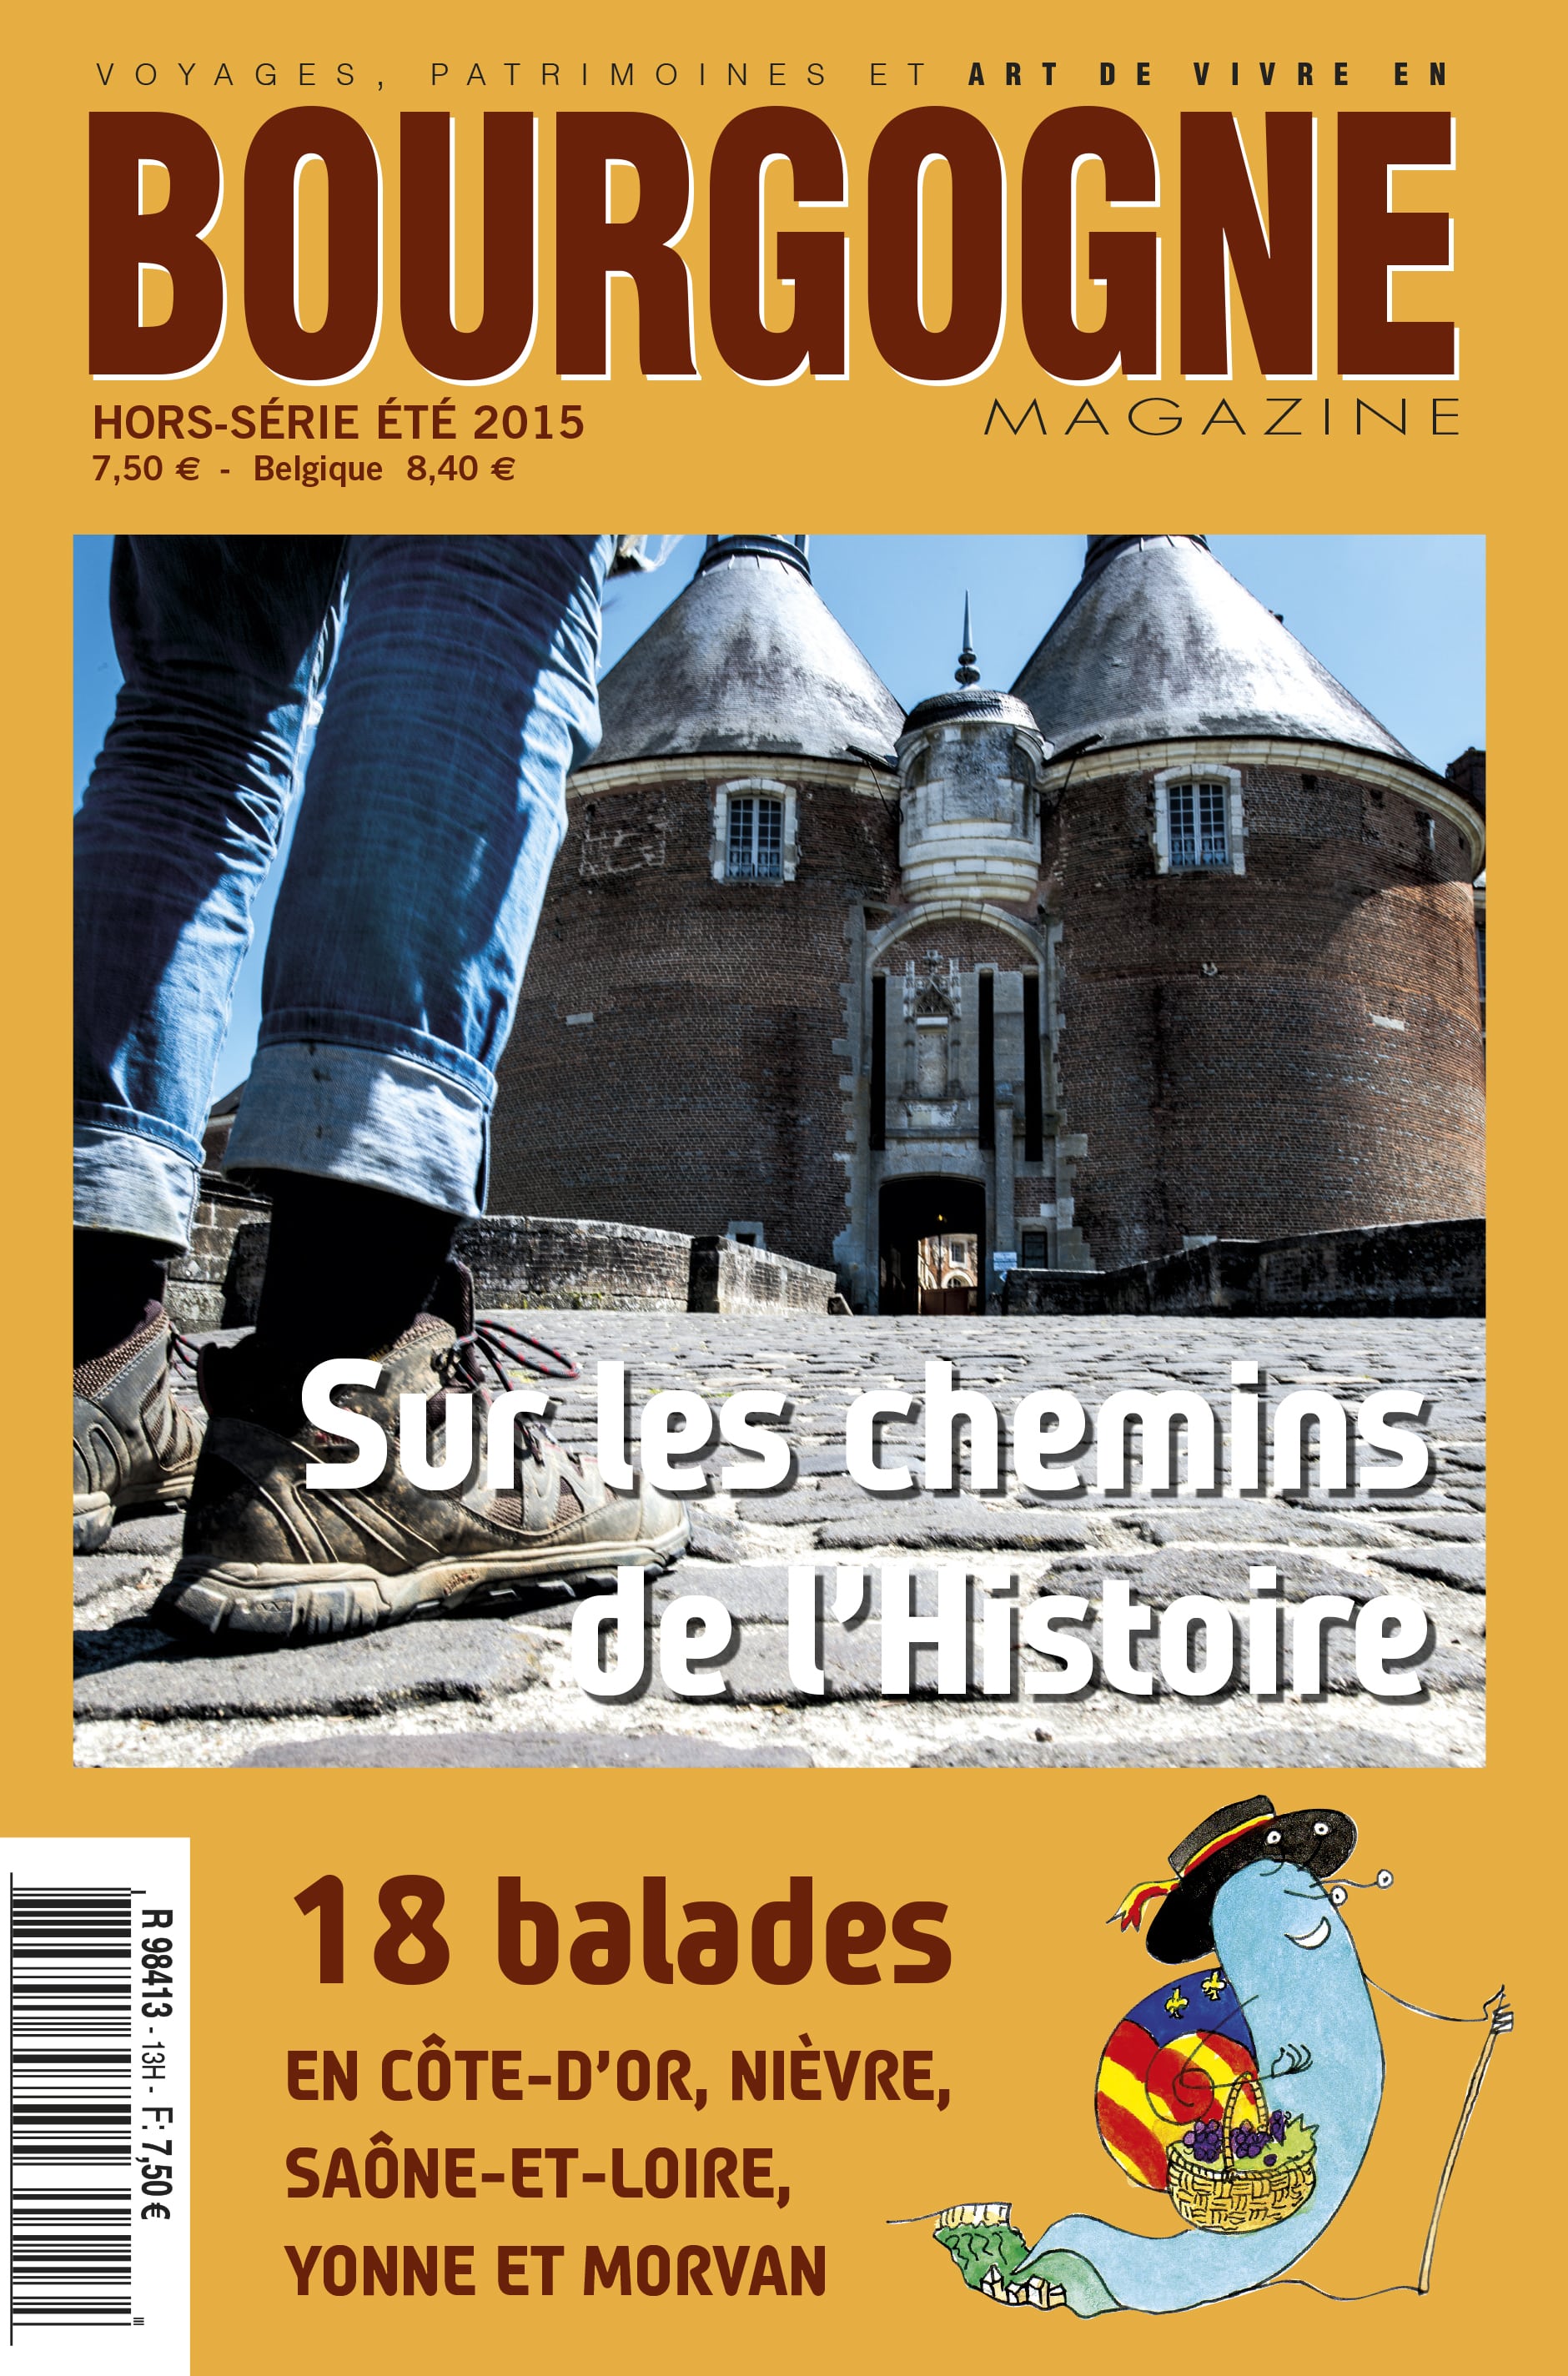 Bourgogne Magazine, spécial balades: l’histoire à deux à l’heure